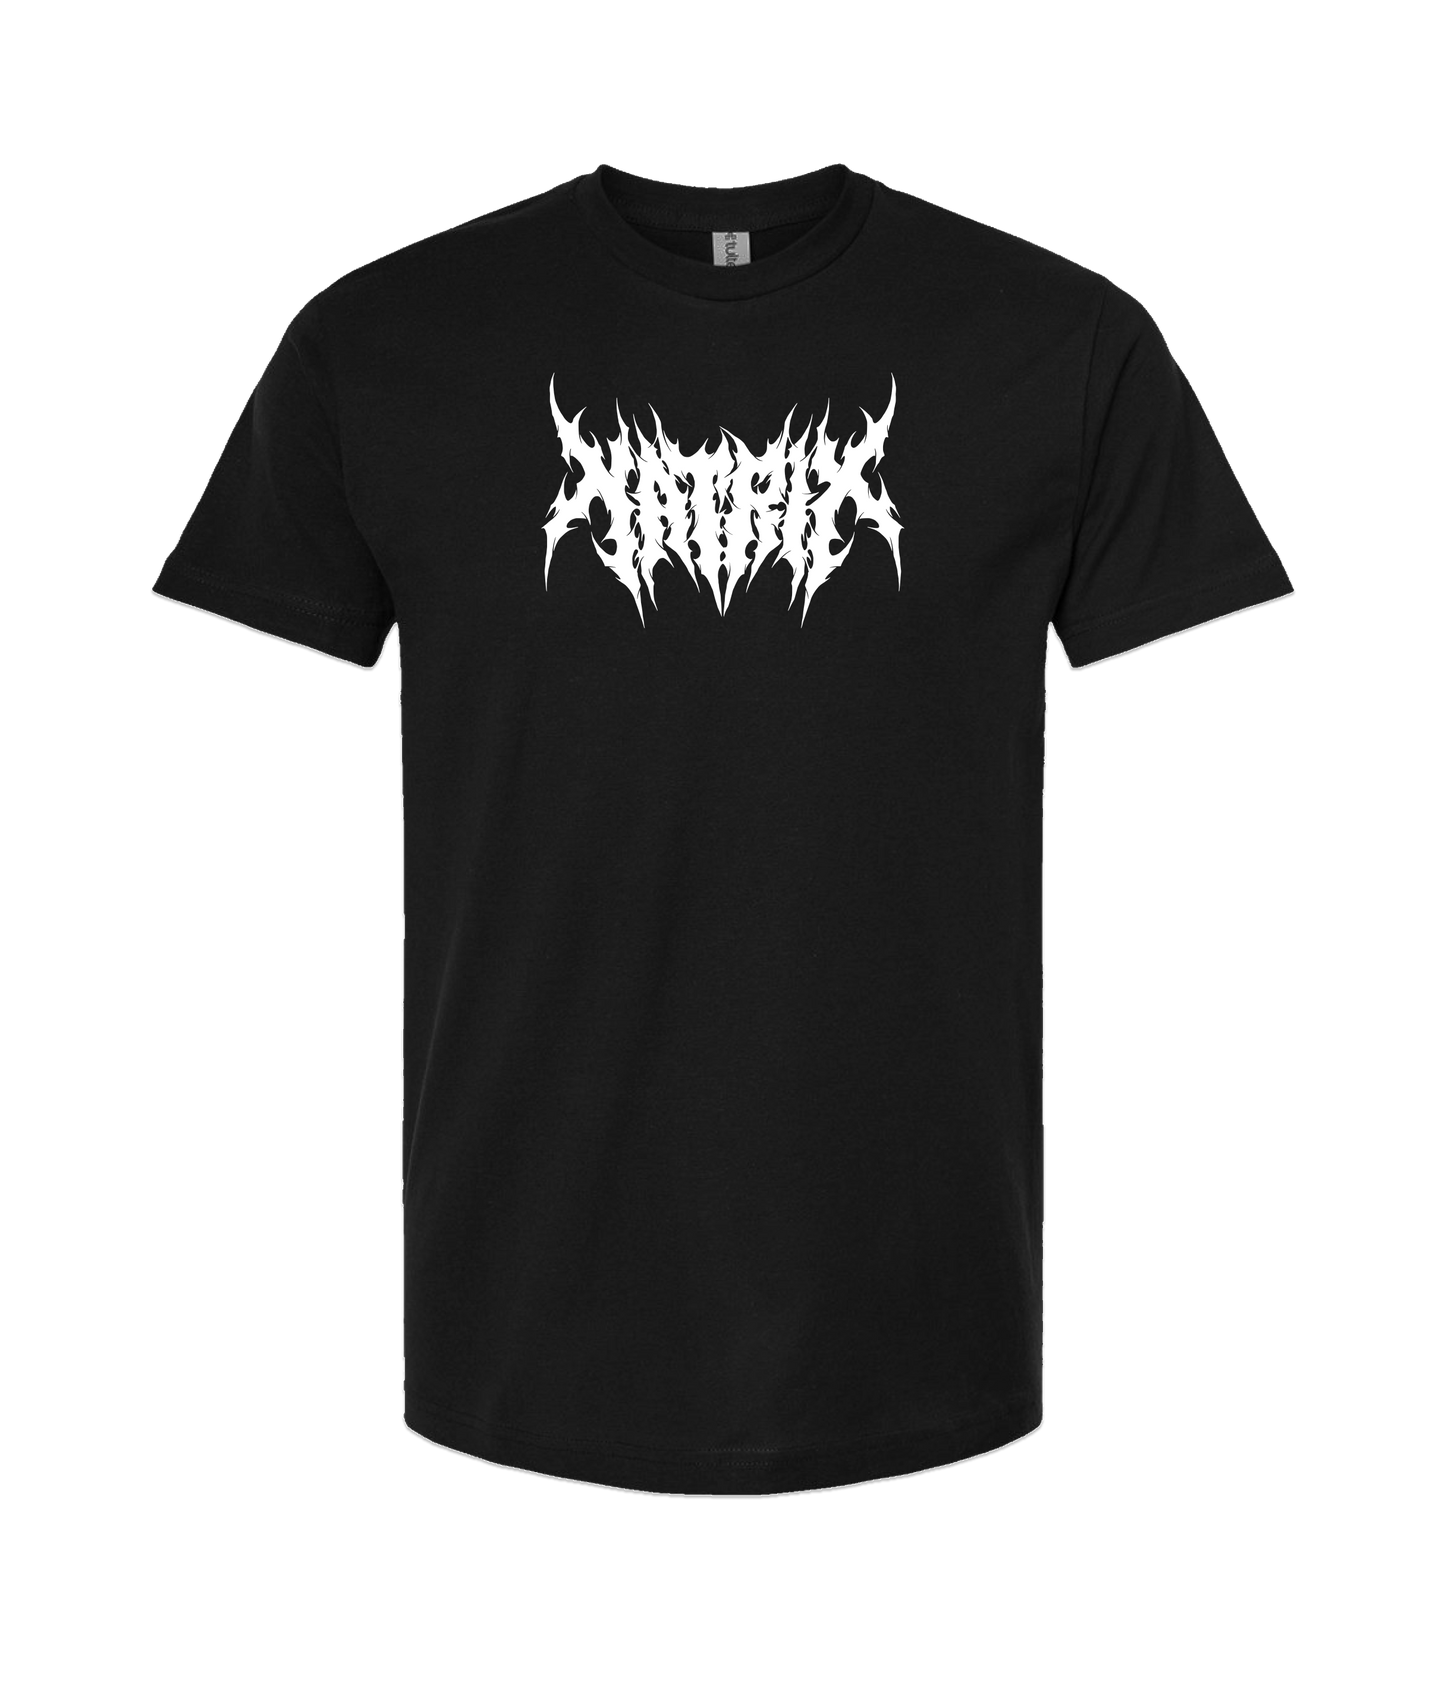 Natrix - Logo White - Black T Shirt